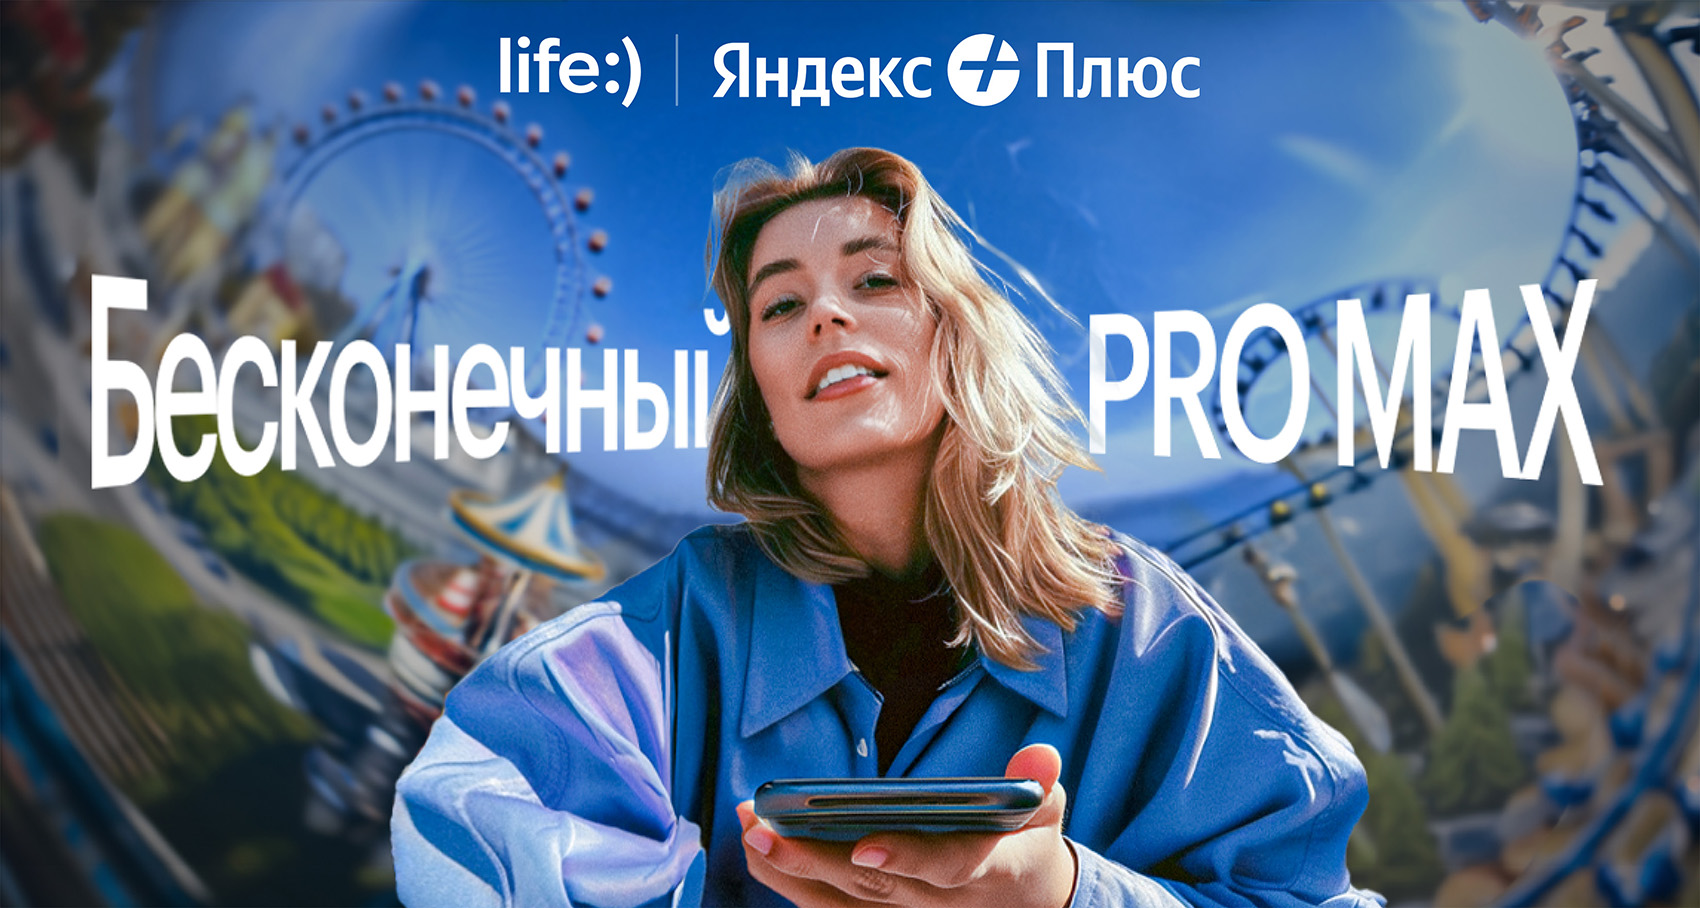 life:) запустил максимальный тариф. Полный безлимит с подпиской Яндекс Плюс